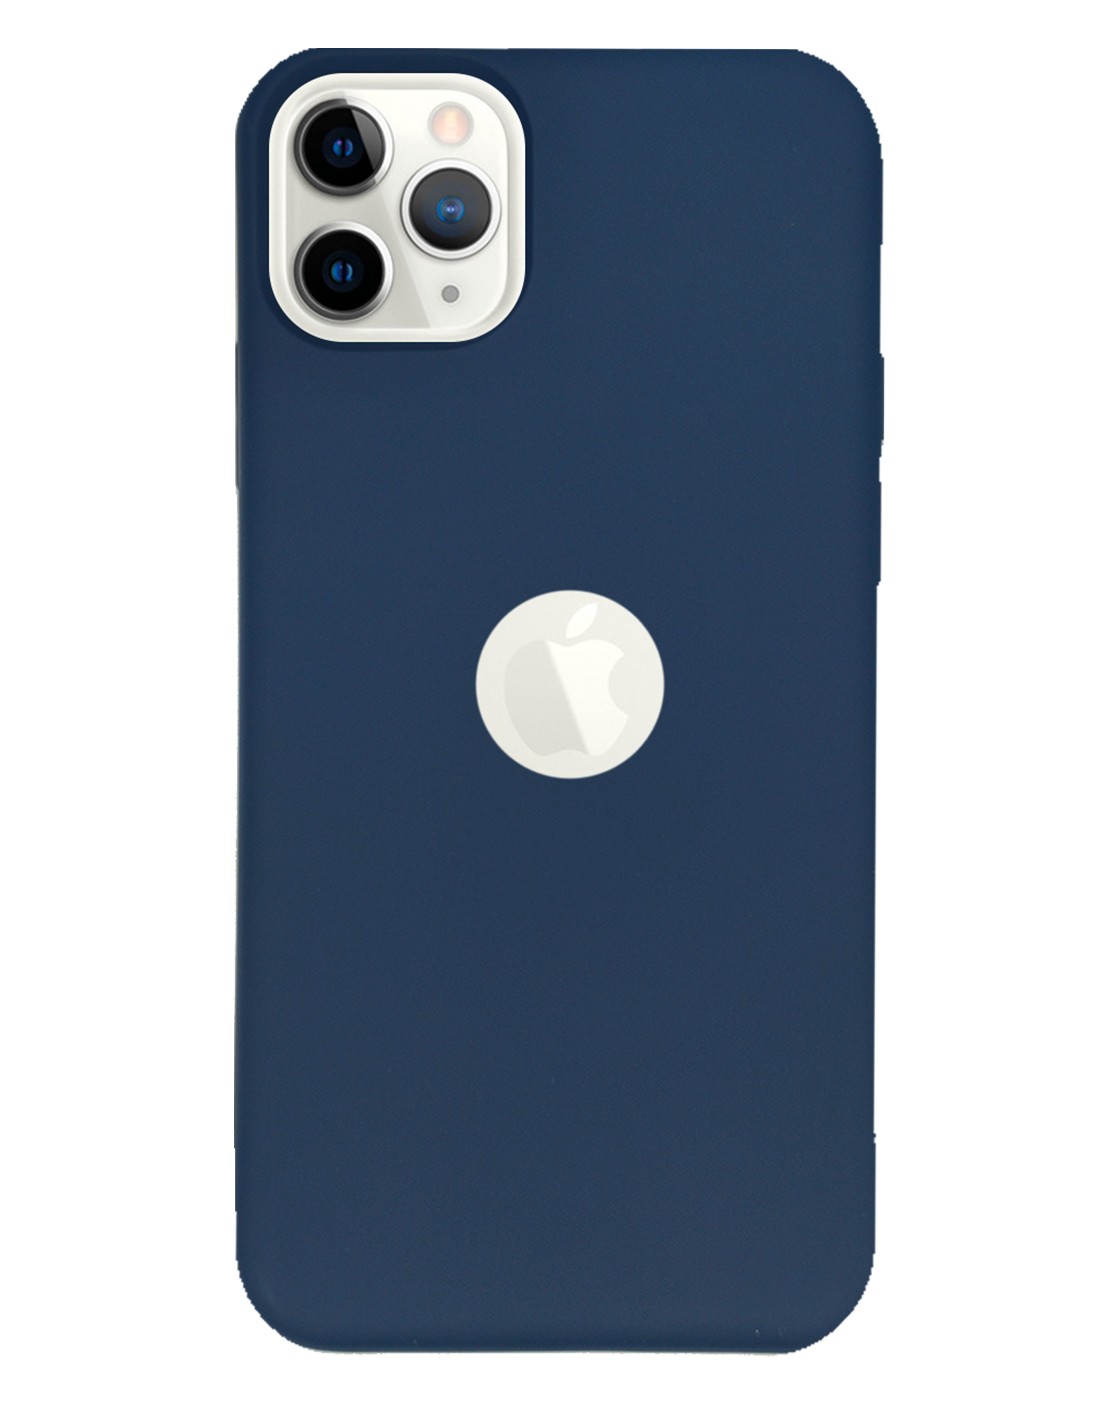 Funda Silicona Suave Azul iPhone 11 Pro Max